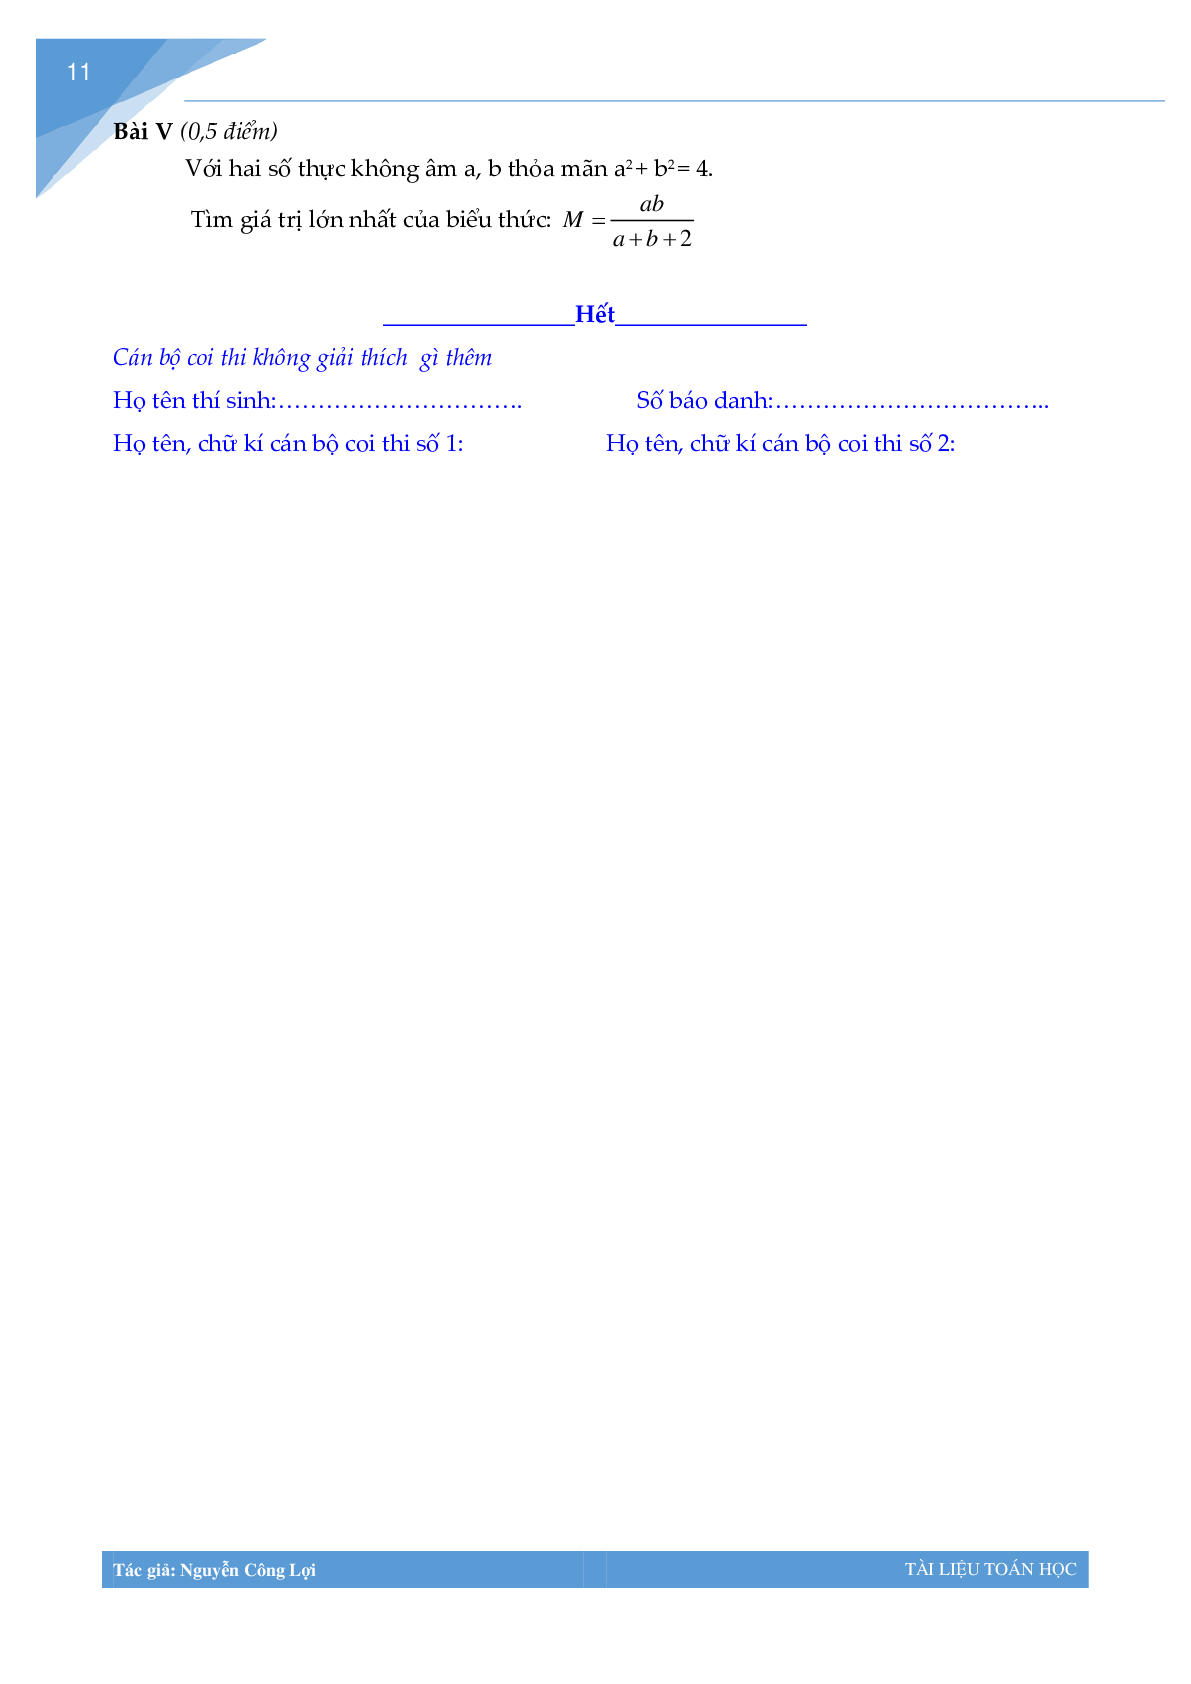 Tuyển tập đề thi vào lớp 10 môn toán Thành phố Hà Nội (trang 10)